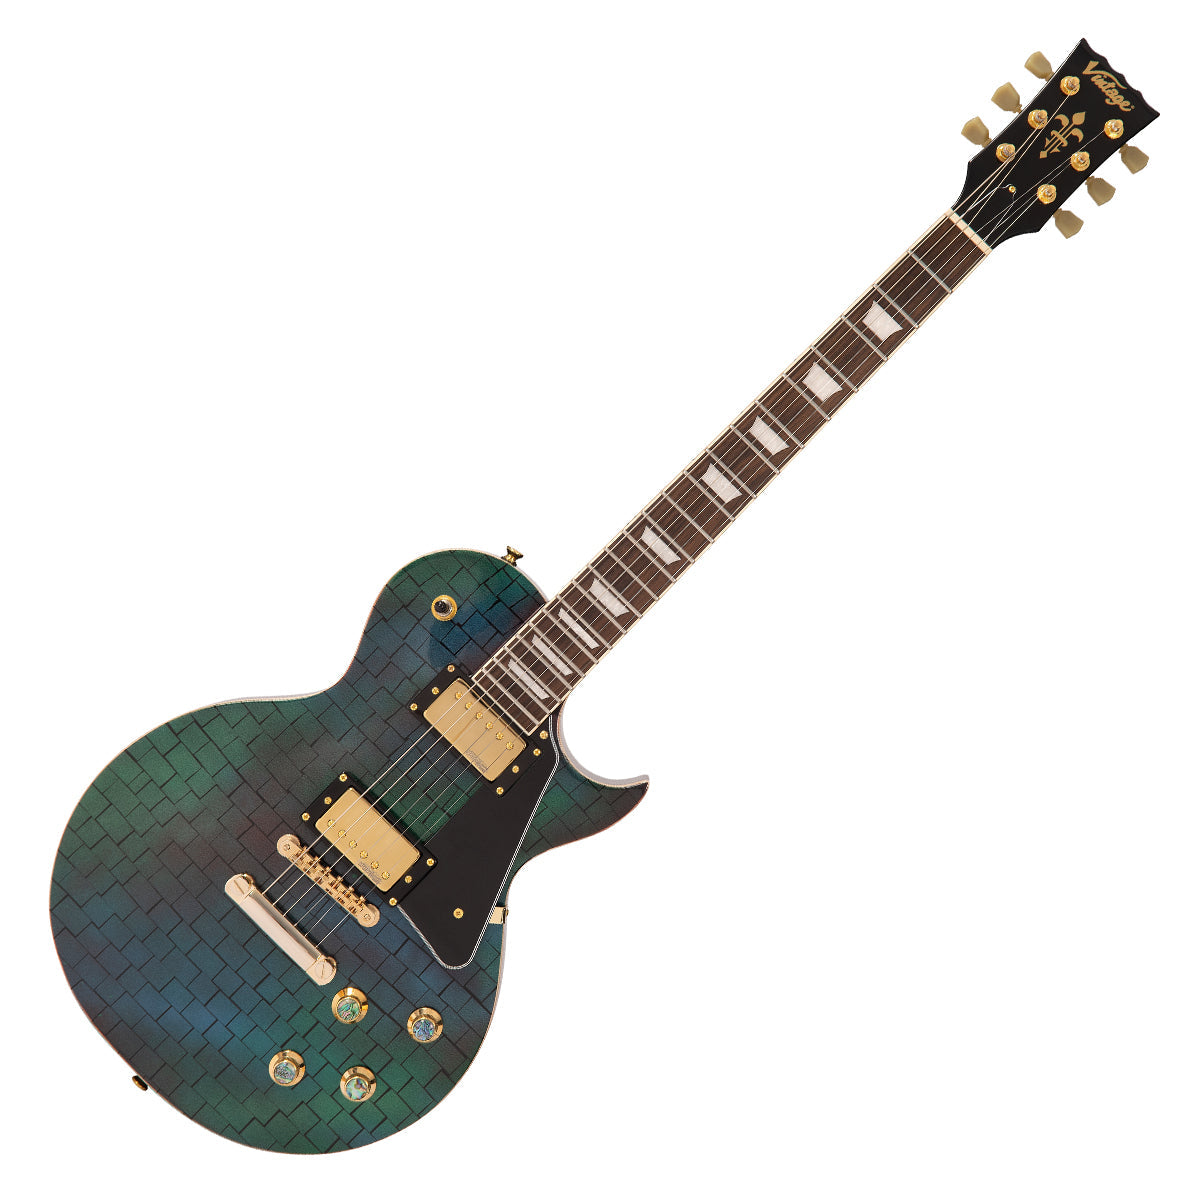 SOLD - Vintage V100 ProShop Unique ~ The Brick, Electric Guitars for sale at Richards Guitars.